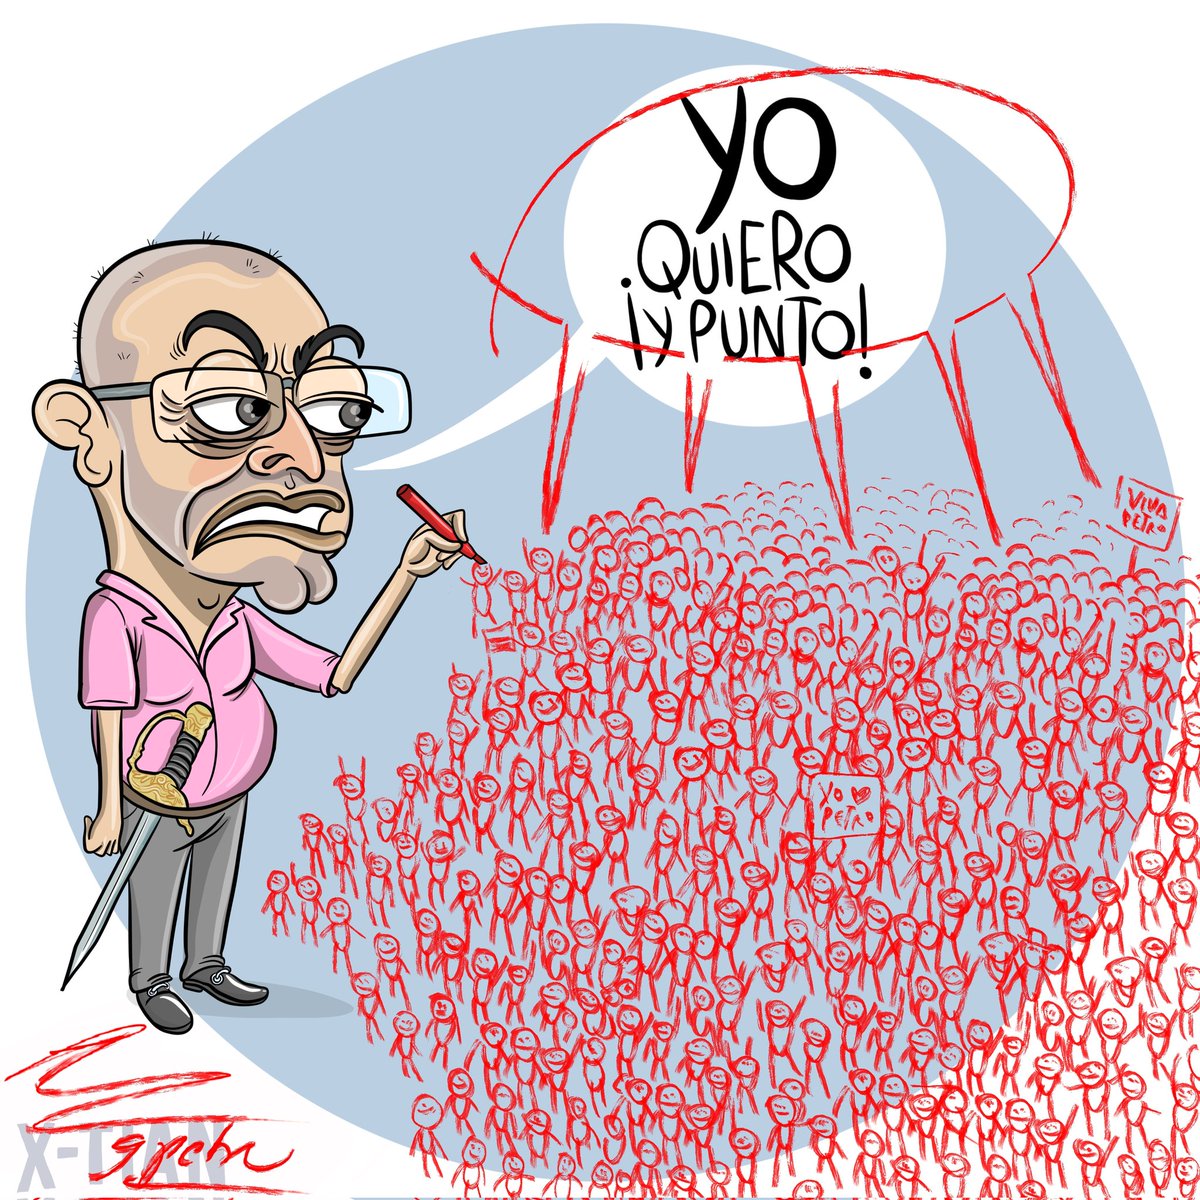 LA VOLUNTAD 'DEL PUEBLO'. Mi caricatura hoy en @PublimetroCol